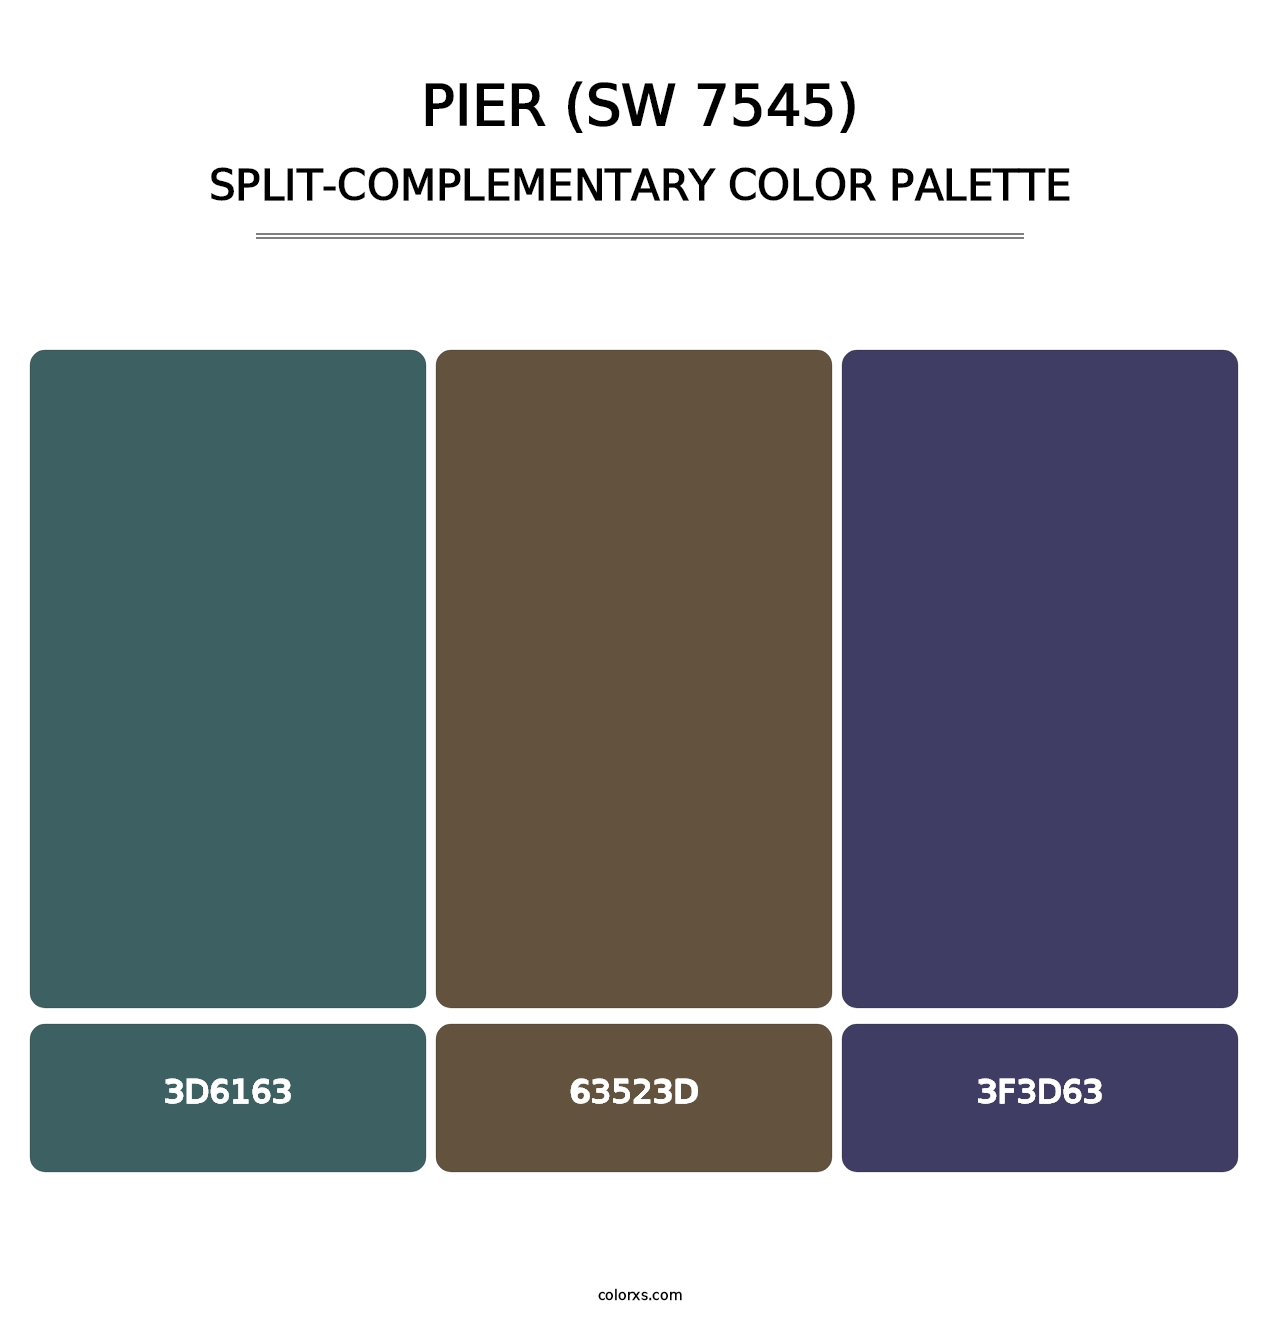 Pier (SW 7545) - Split-Complementary Color Palette